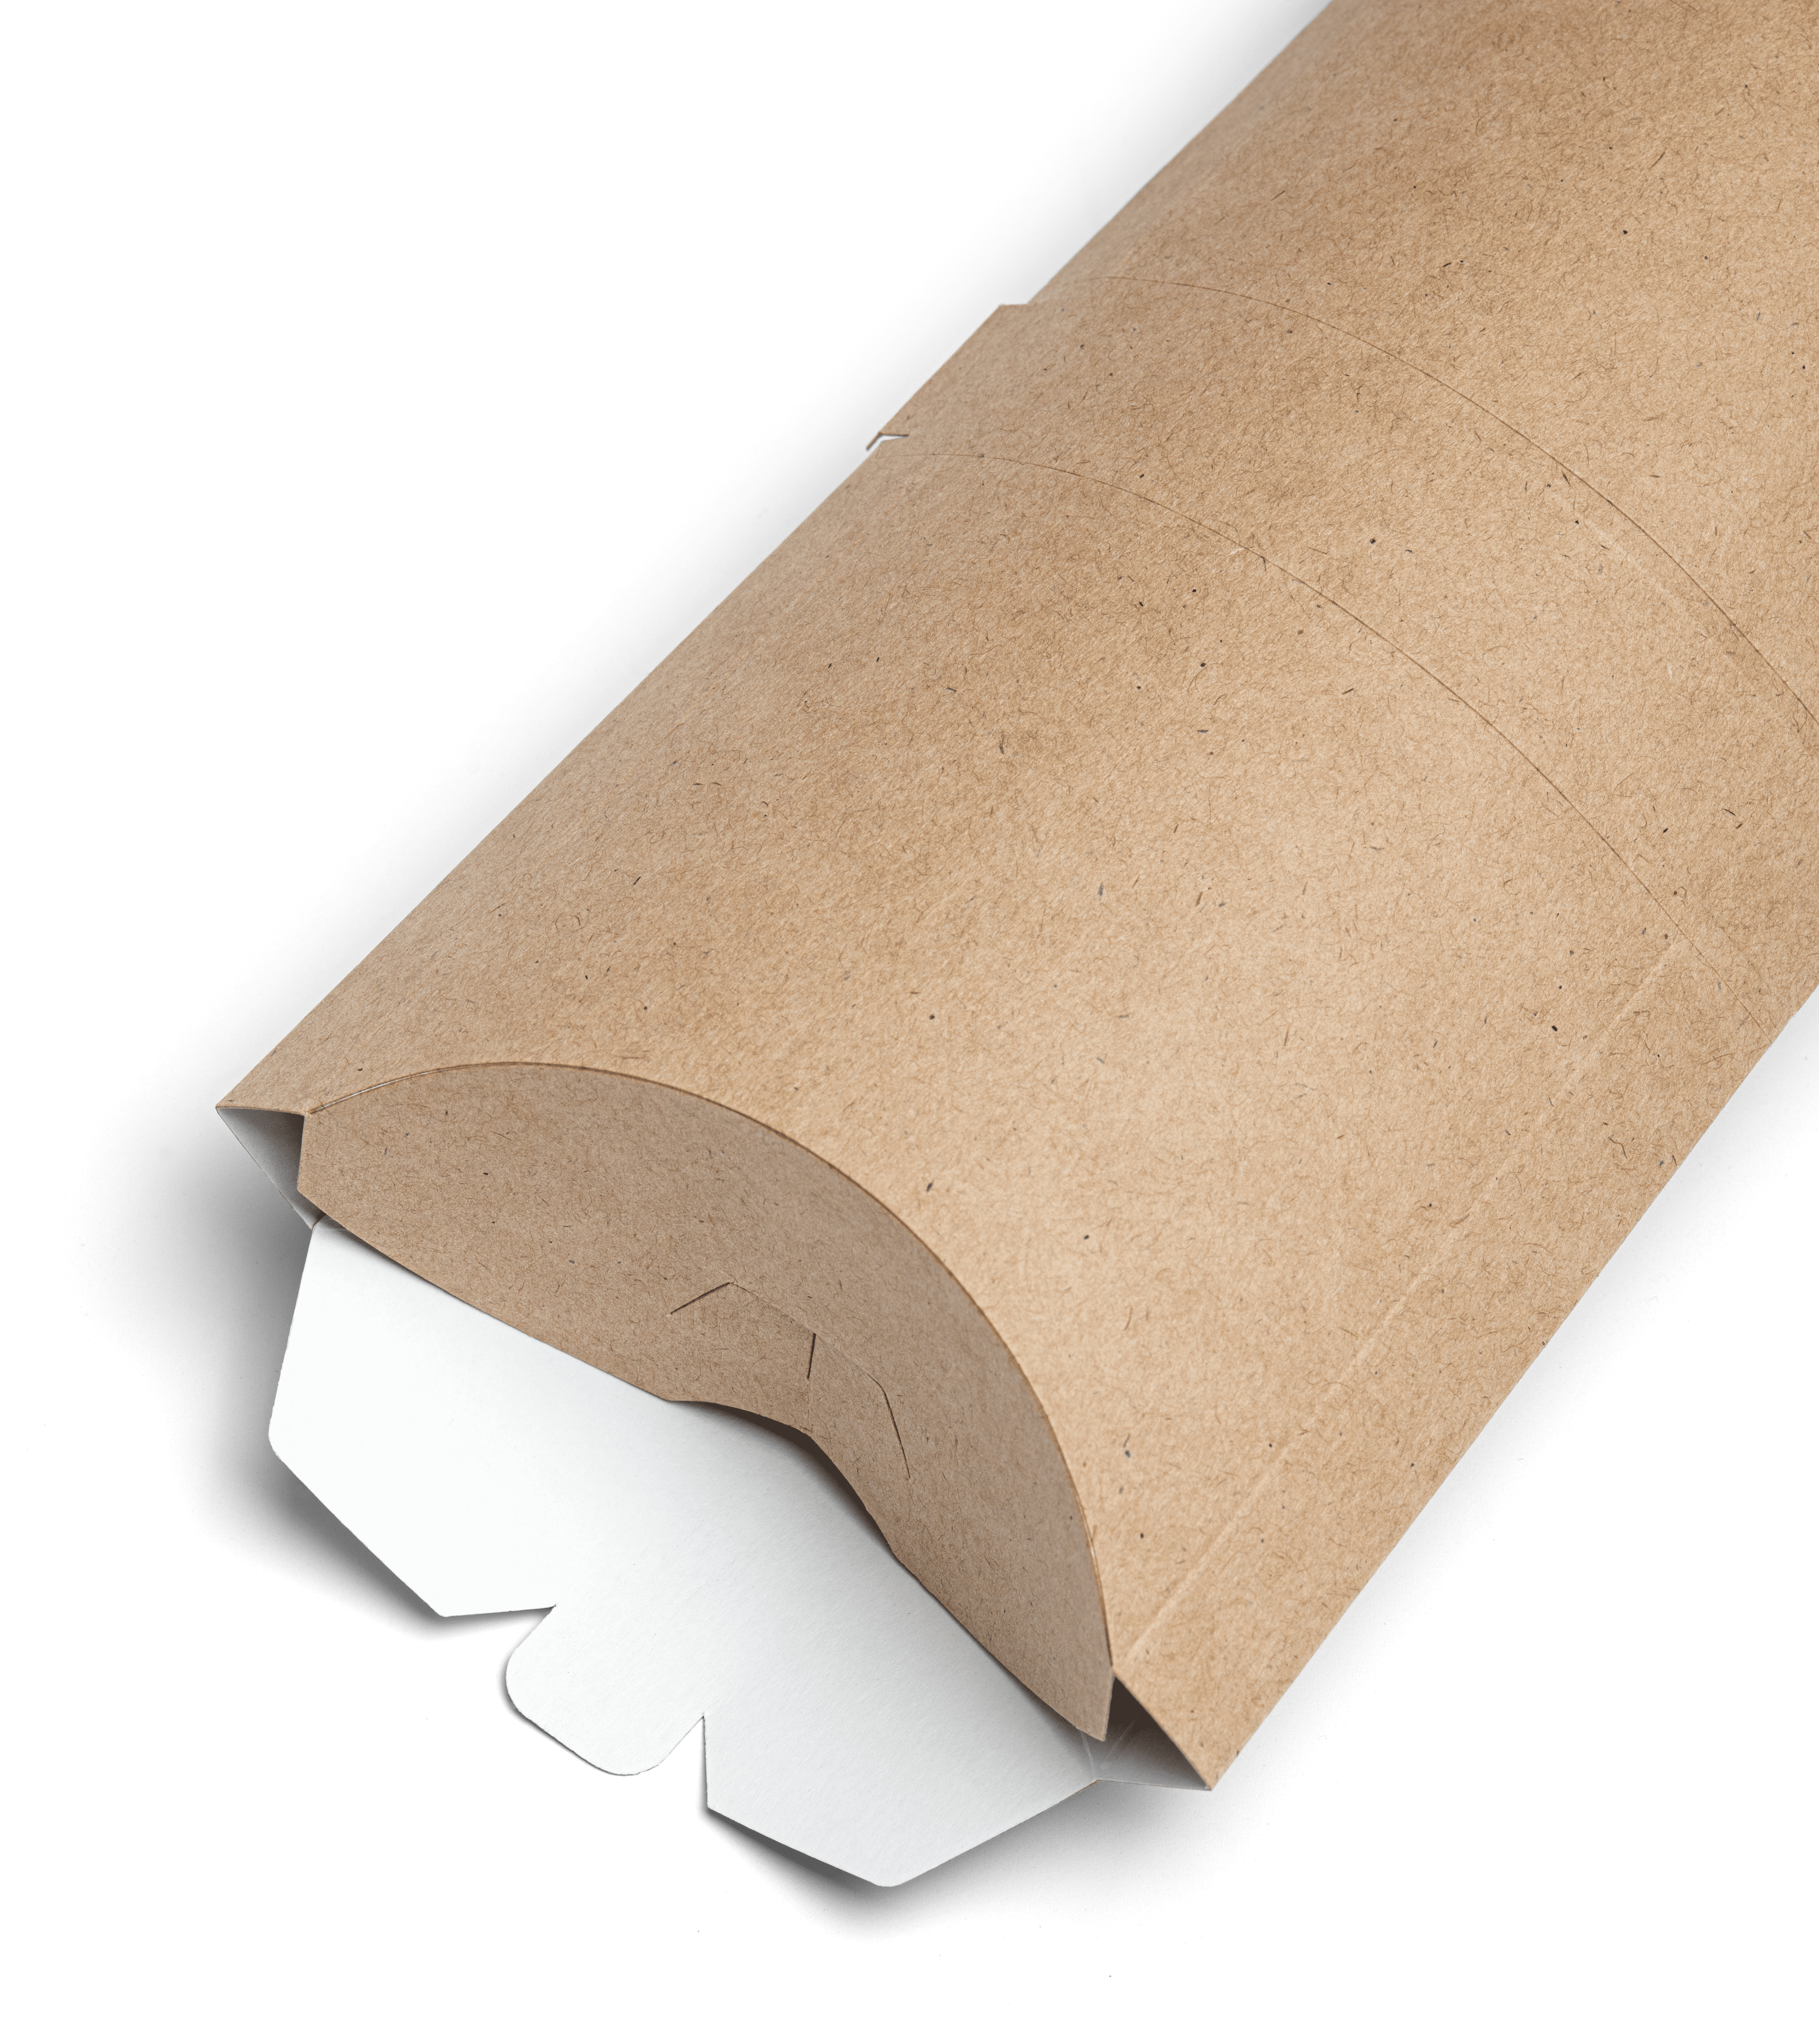 OSQ PILLOW XL packaging for rolls